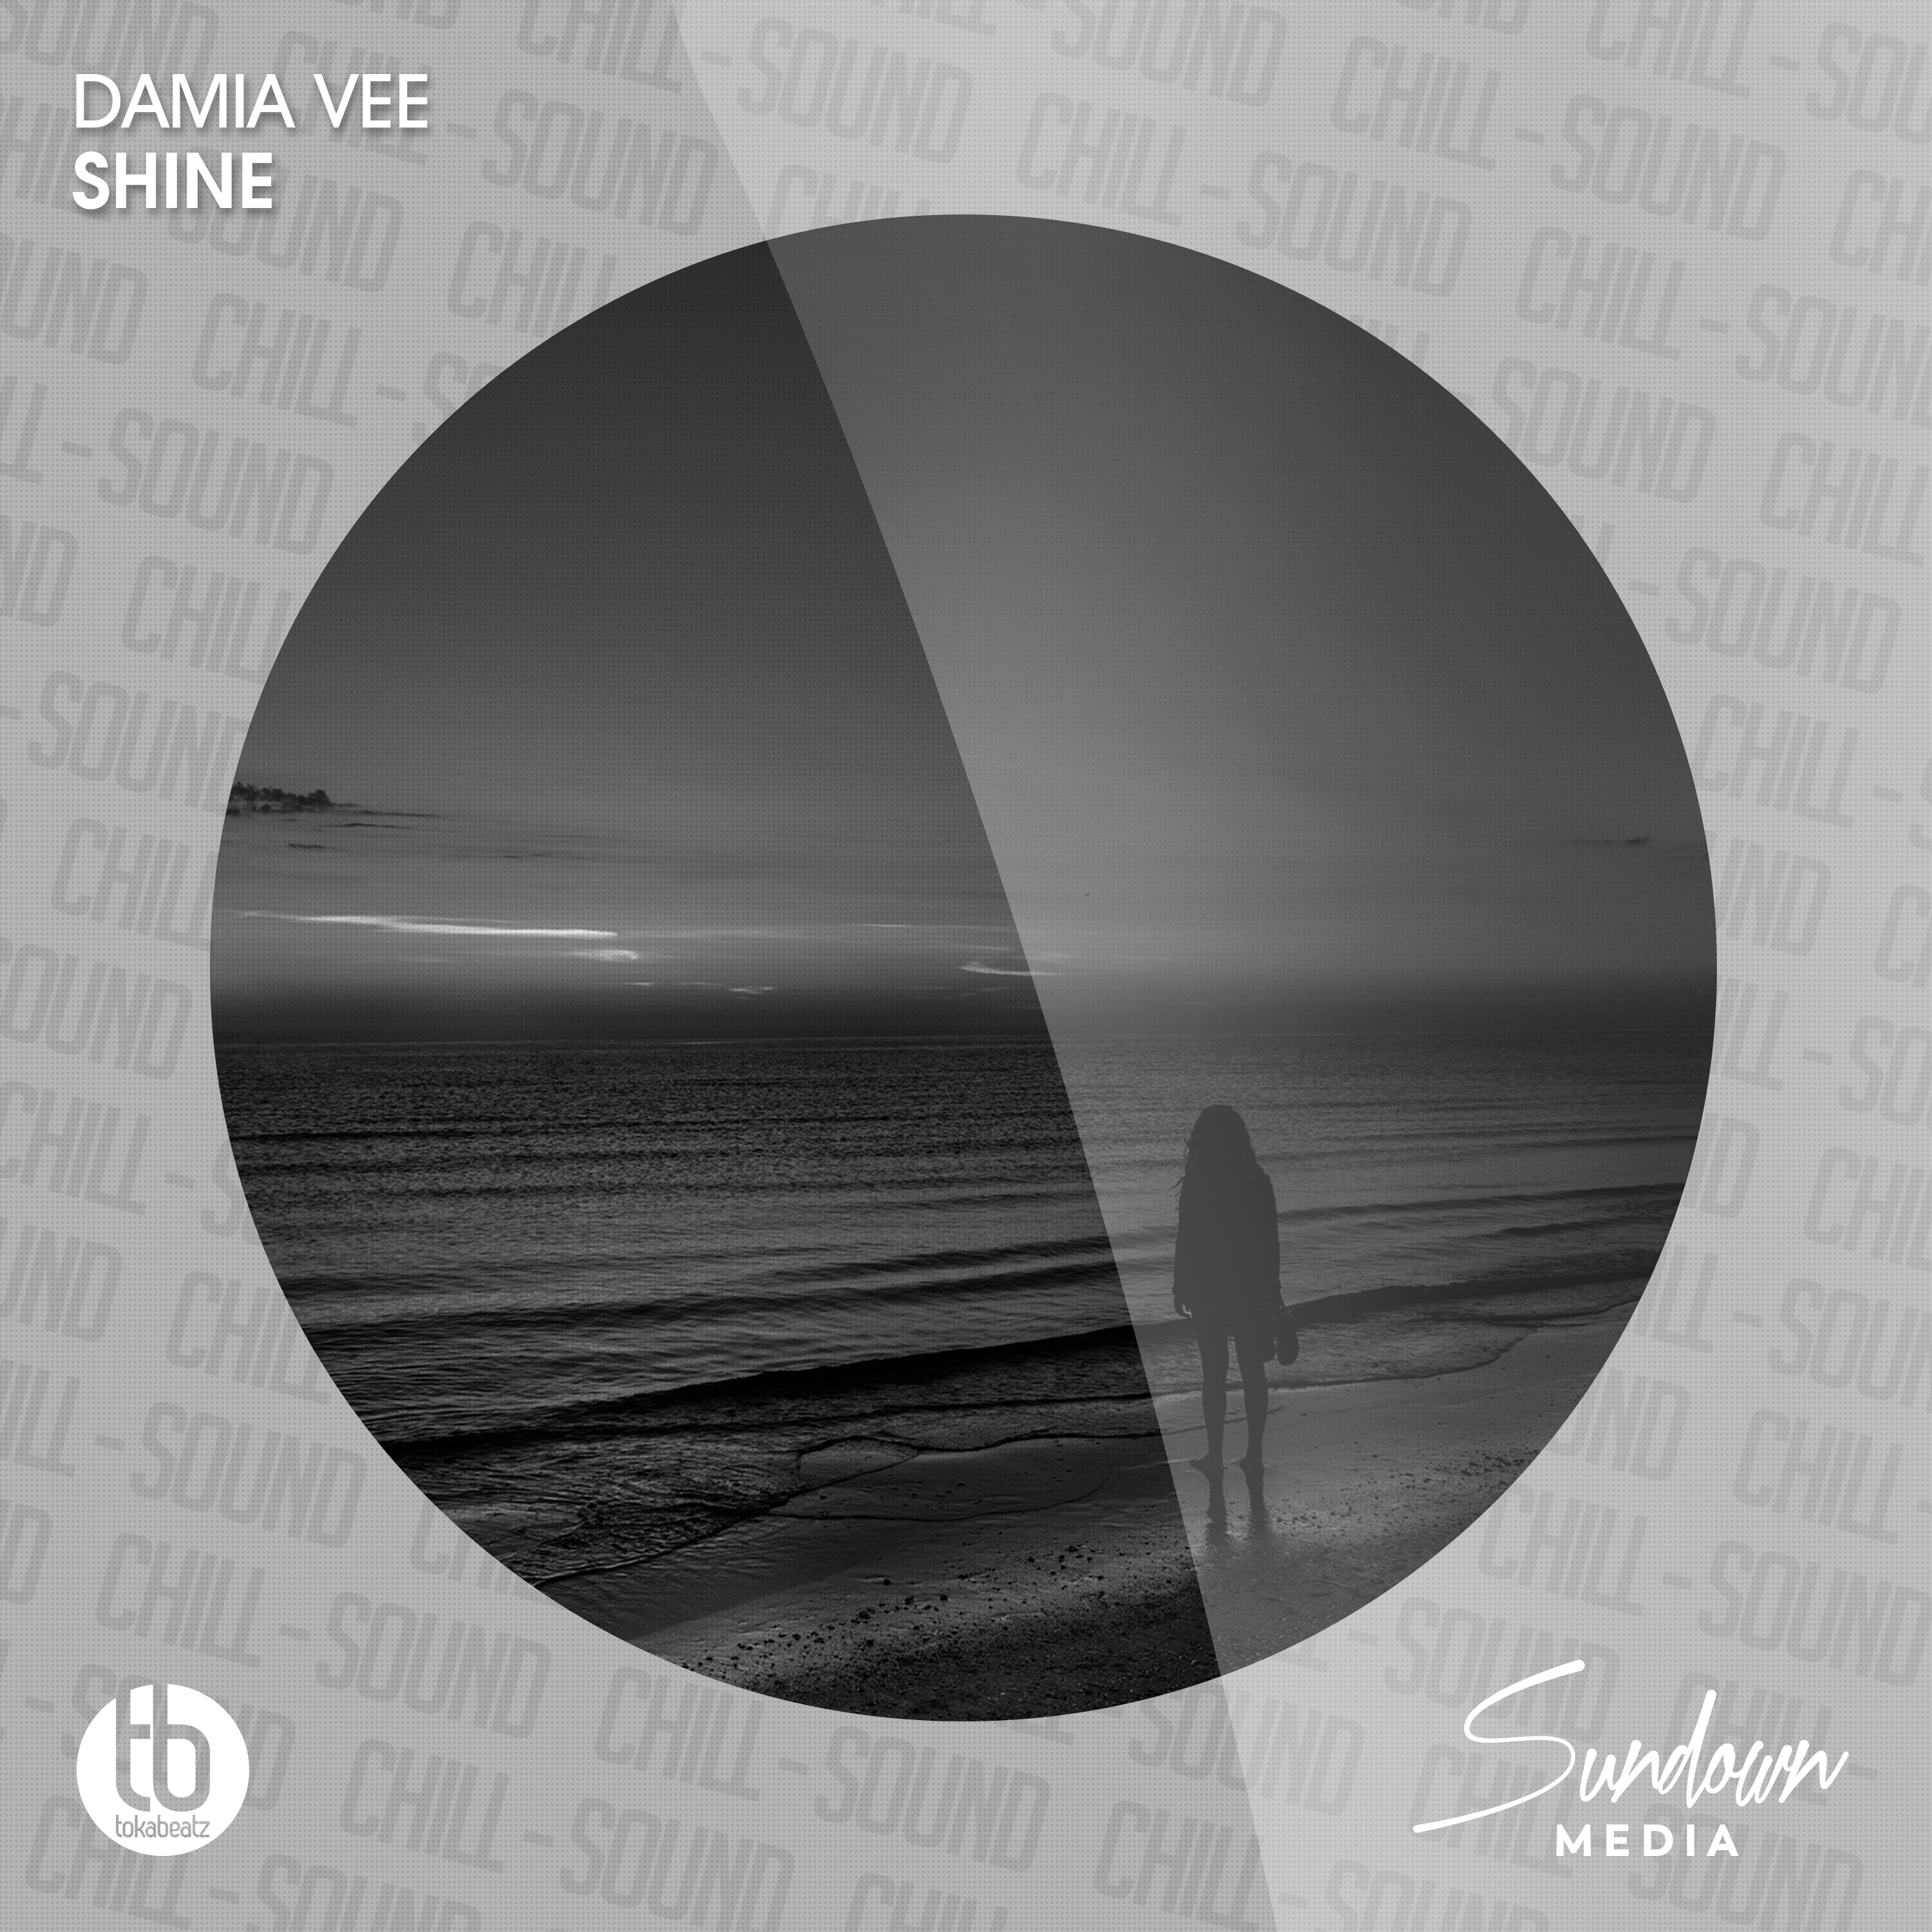 Damia Vee Shine